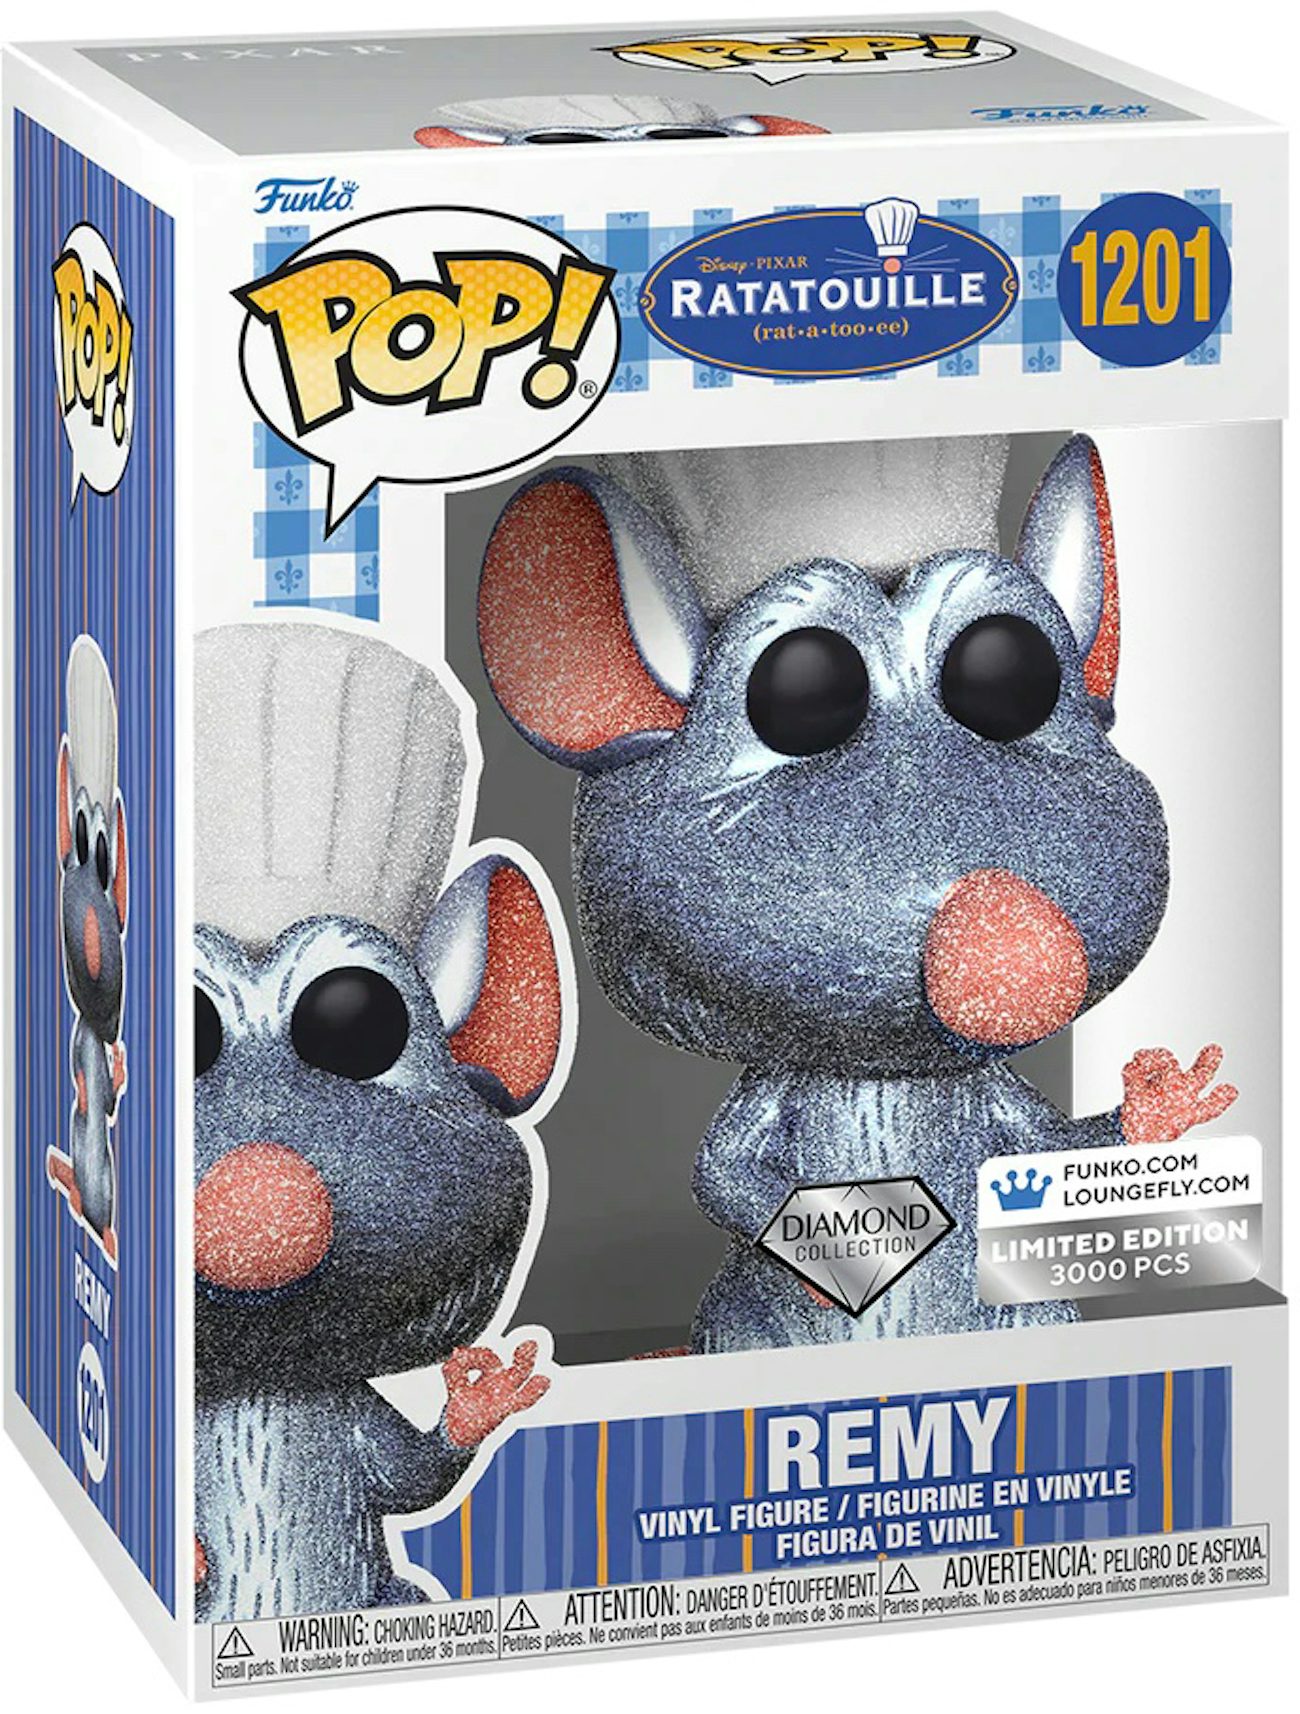 Collection Funko Pop Ratatouille au meilleur prix